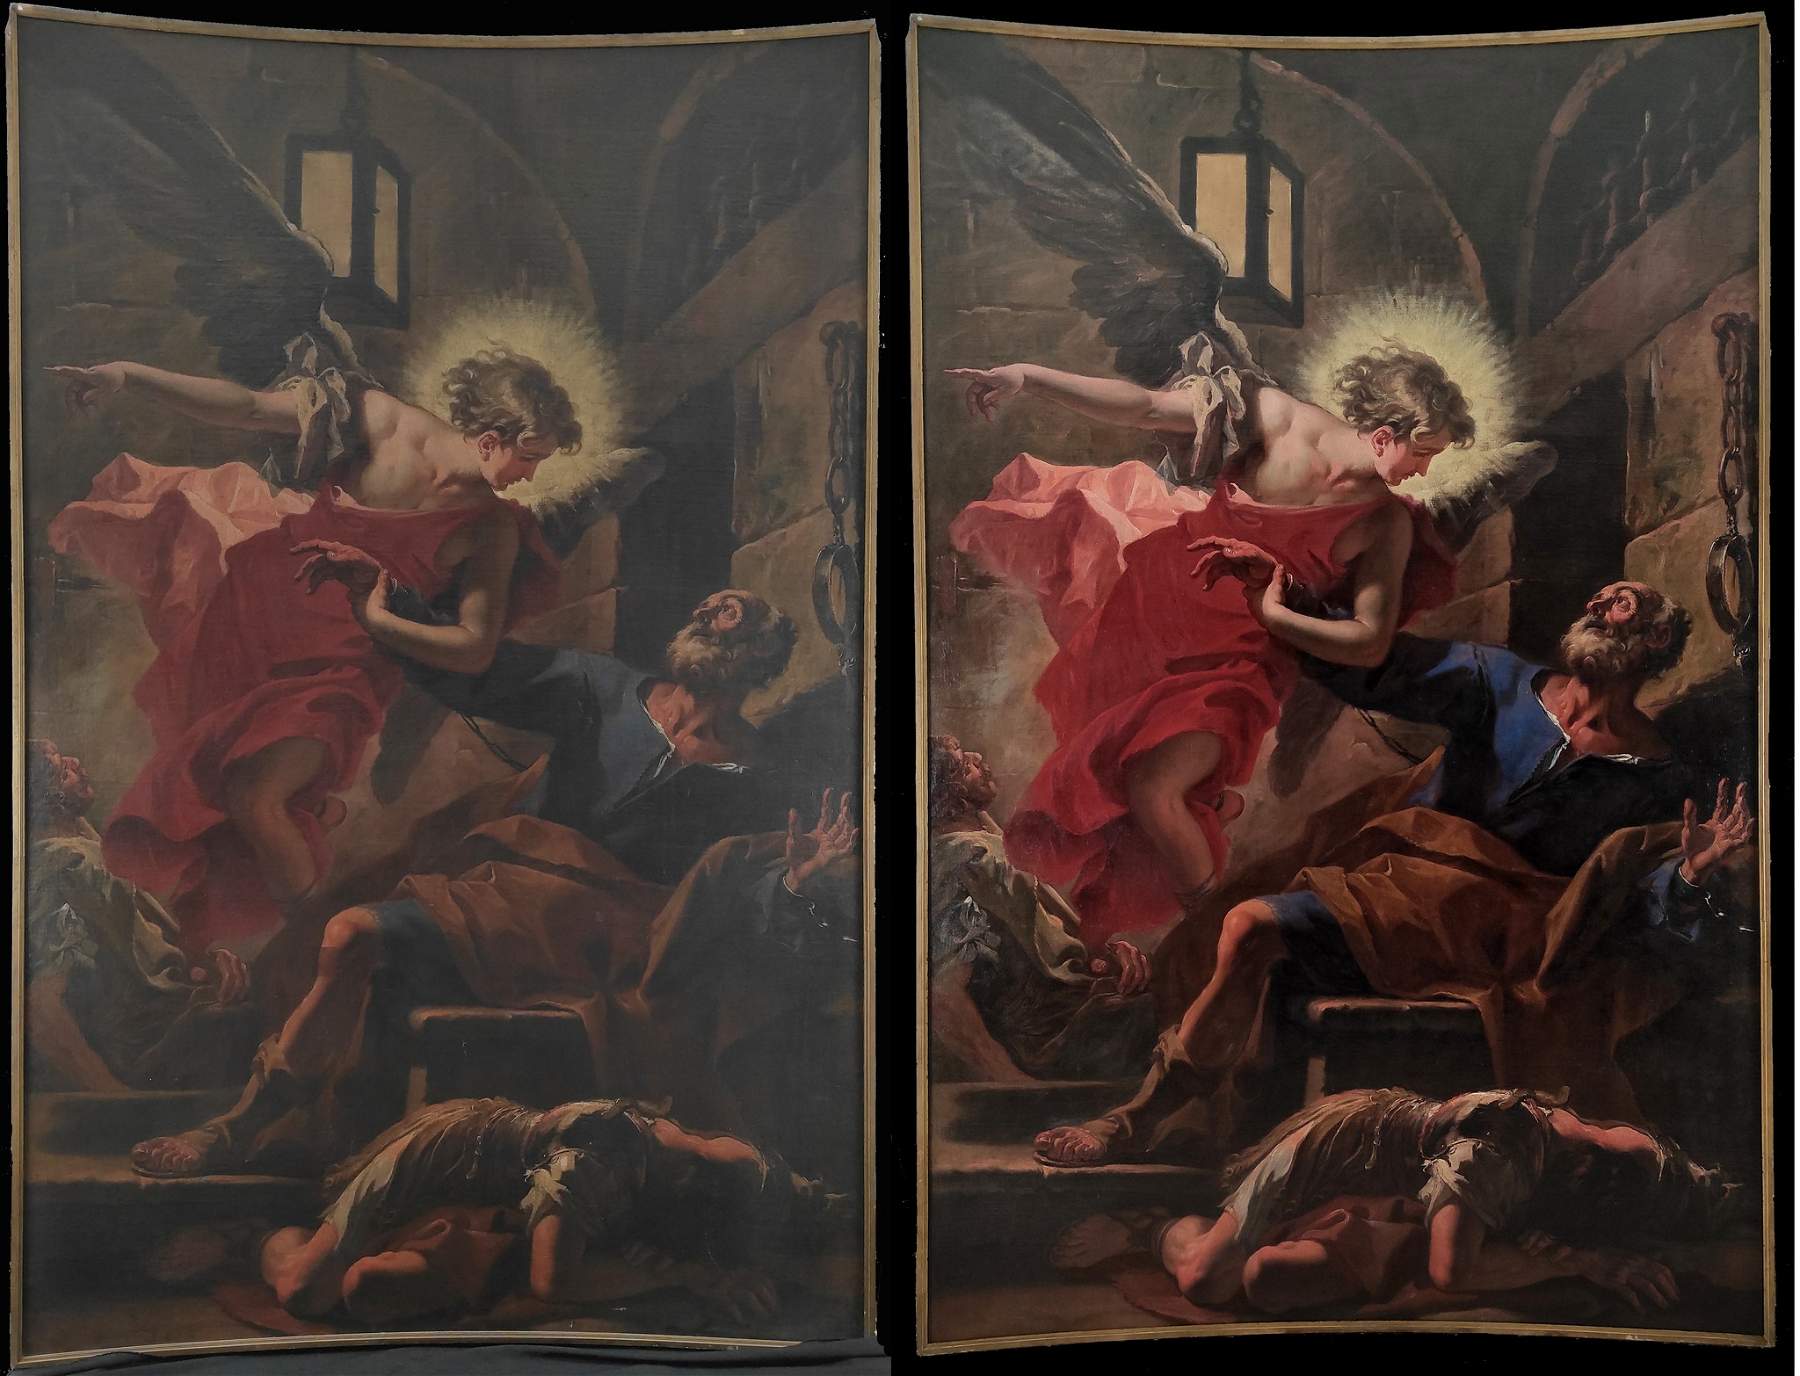 Bergamo, die Restaurierung eines monumentalen Meisterwerks von Sebastiano Ricci endet